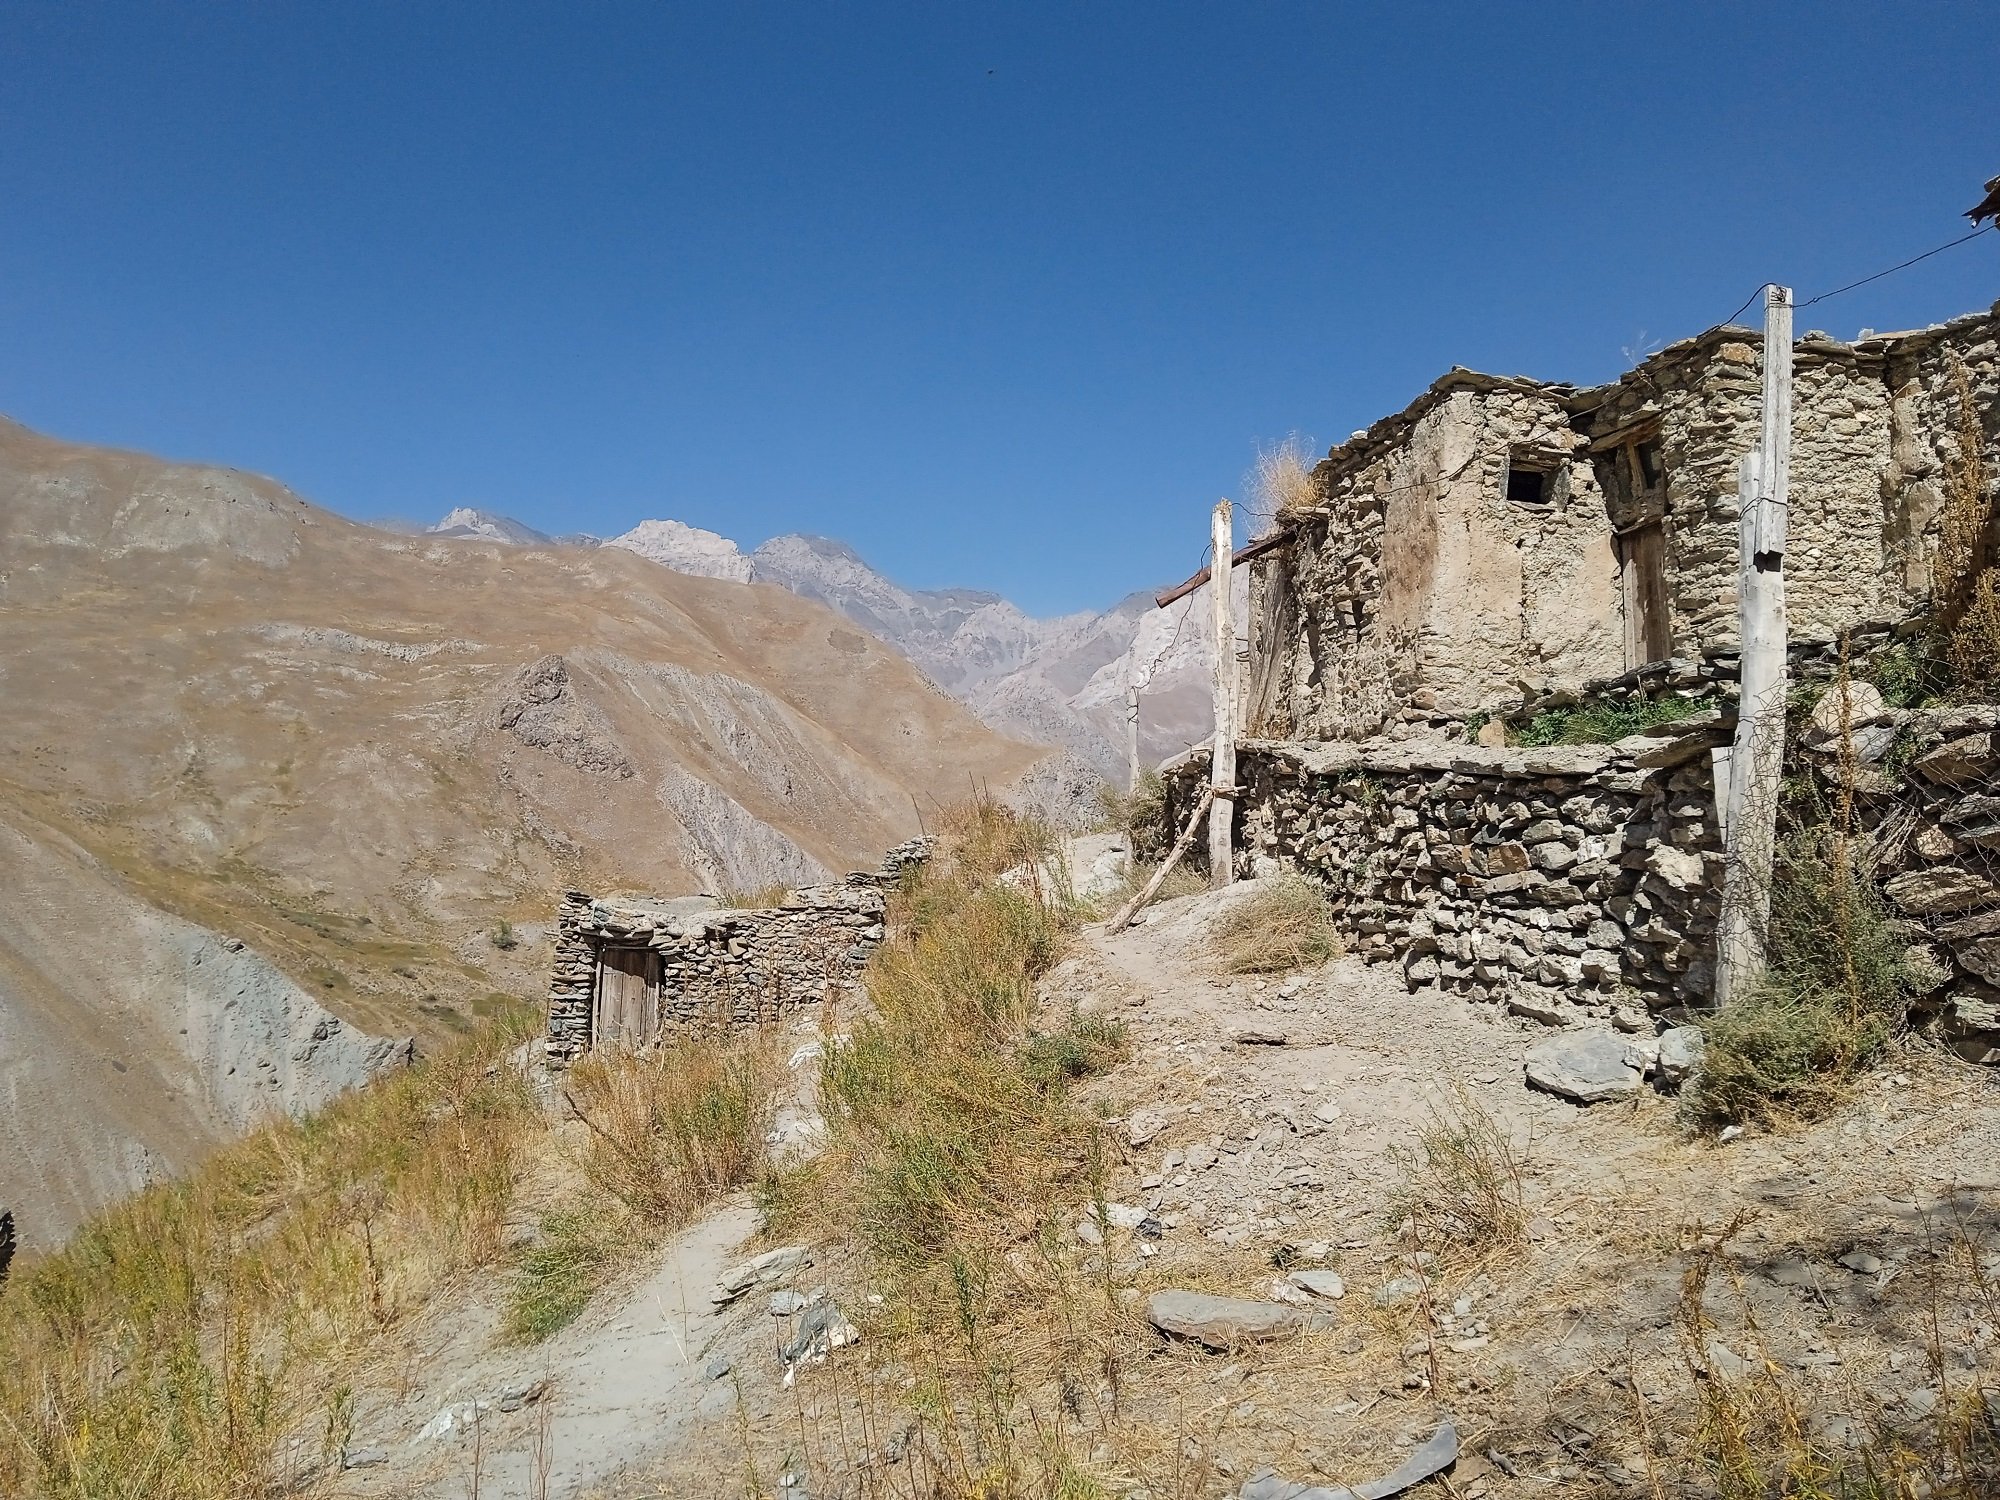 Эфир кишлака. Долина Ягноб Таджикистан. Каратагское ущелье Таджикистан. Горный кишлак. РАМИТСКОЕ ущелье Таджикистана.